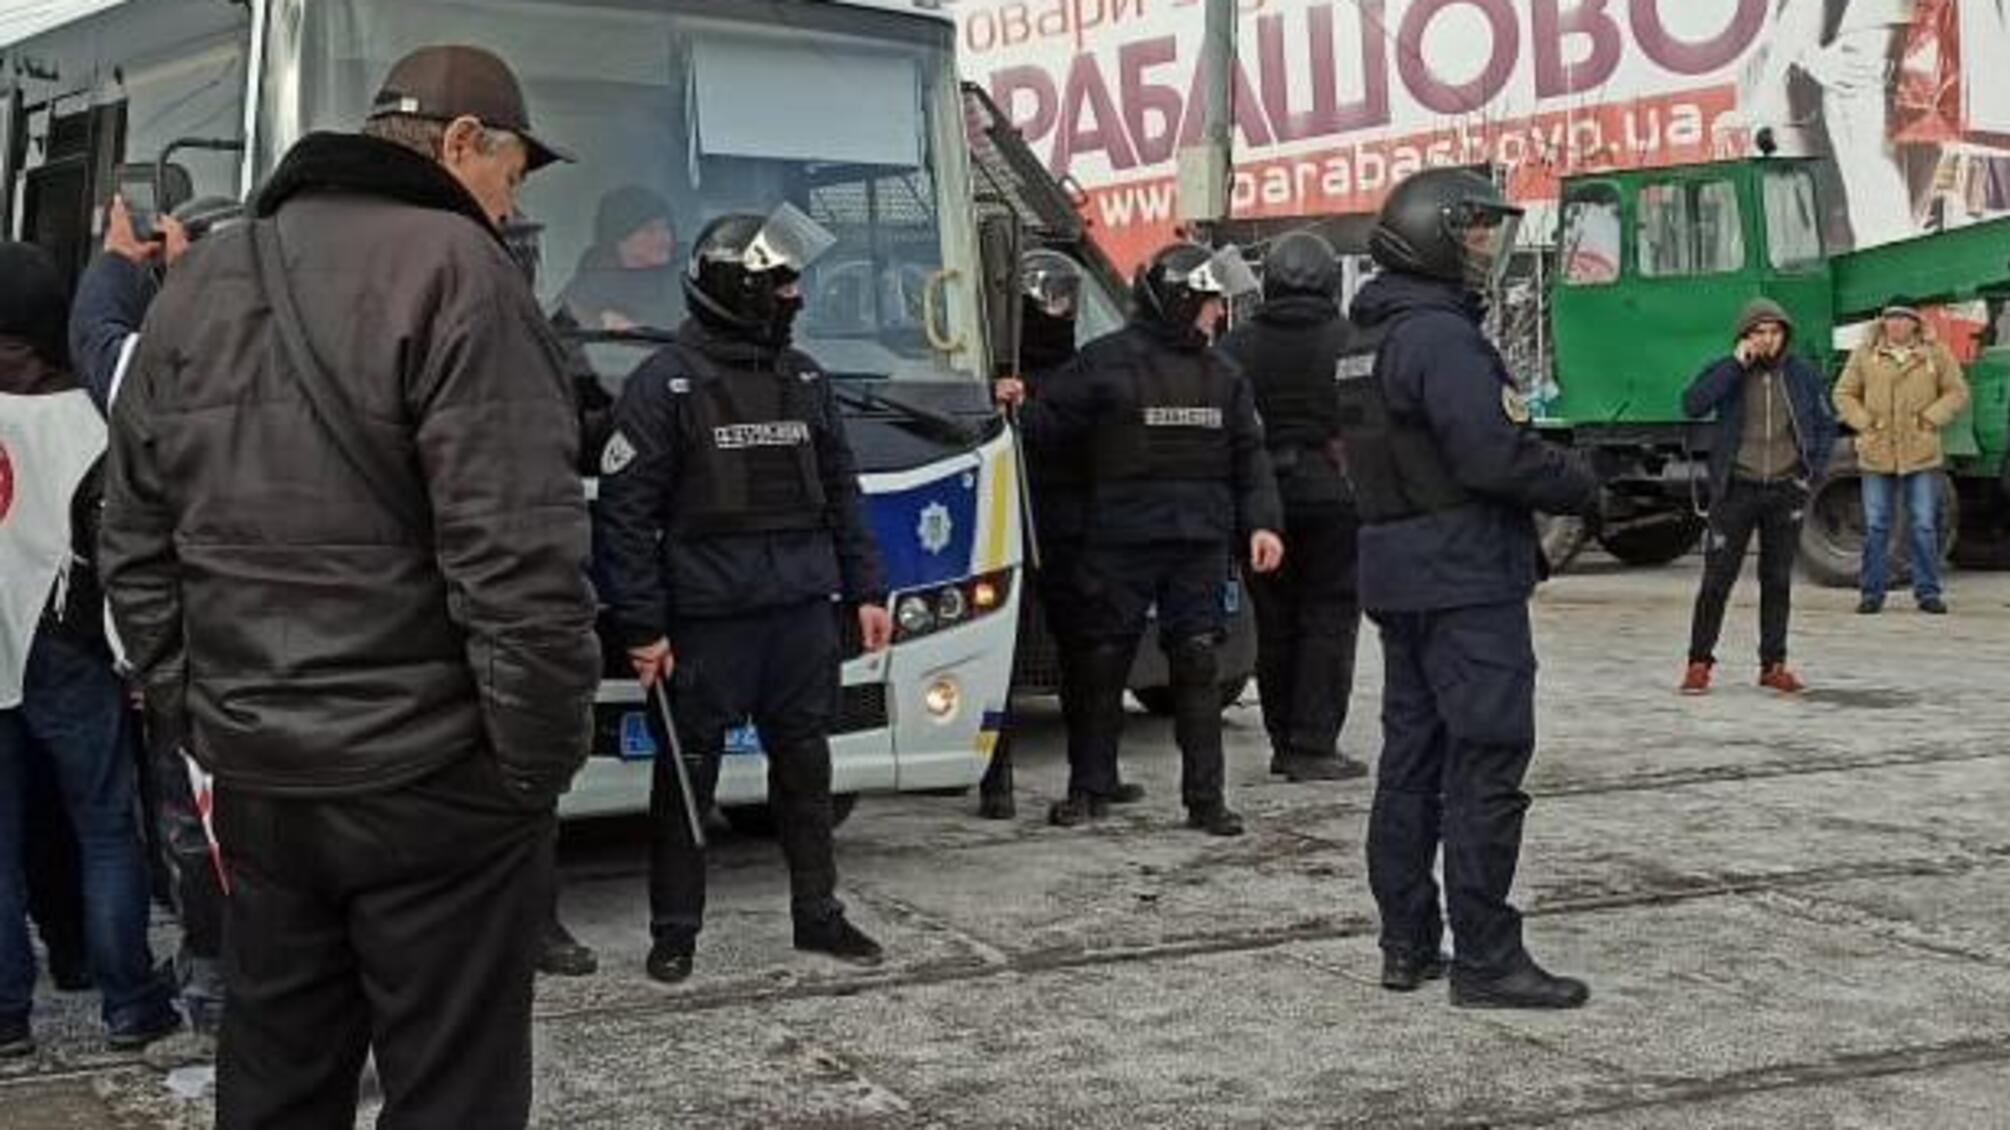 Харківська поліція вживає комплекс заходів для недопущення розвитку силового протистояння на ринку «Барабашово» (ОНОВЛЕНО)